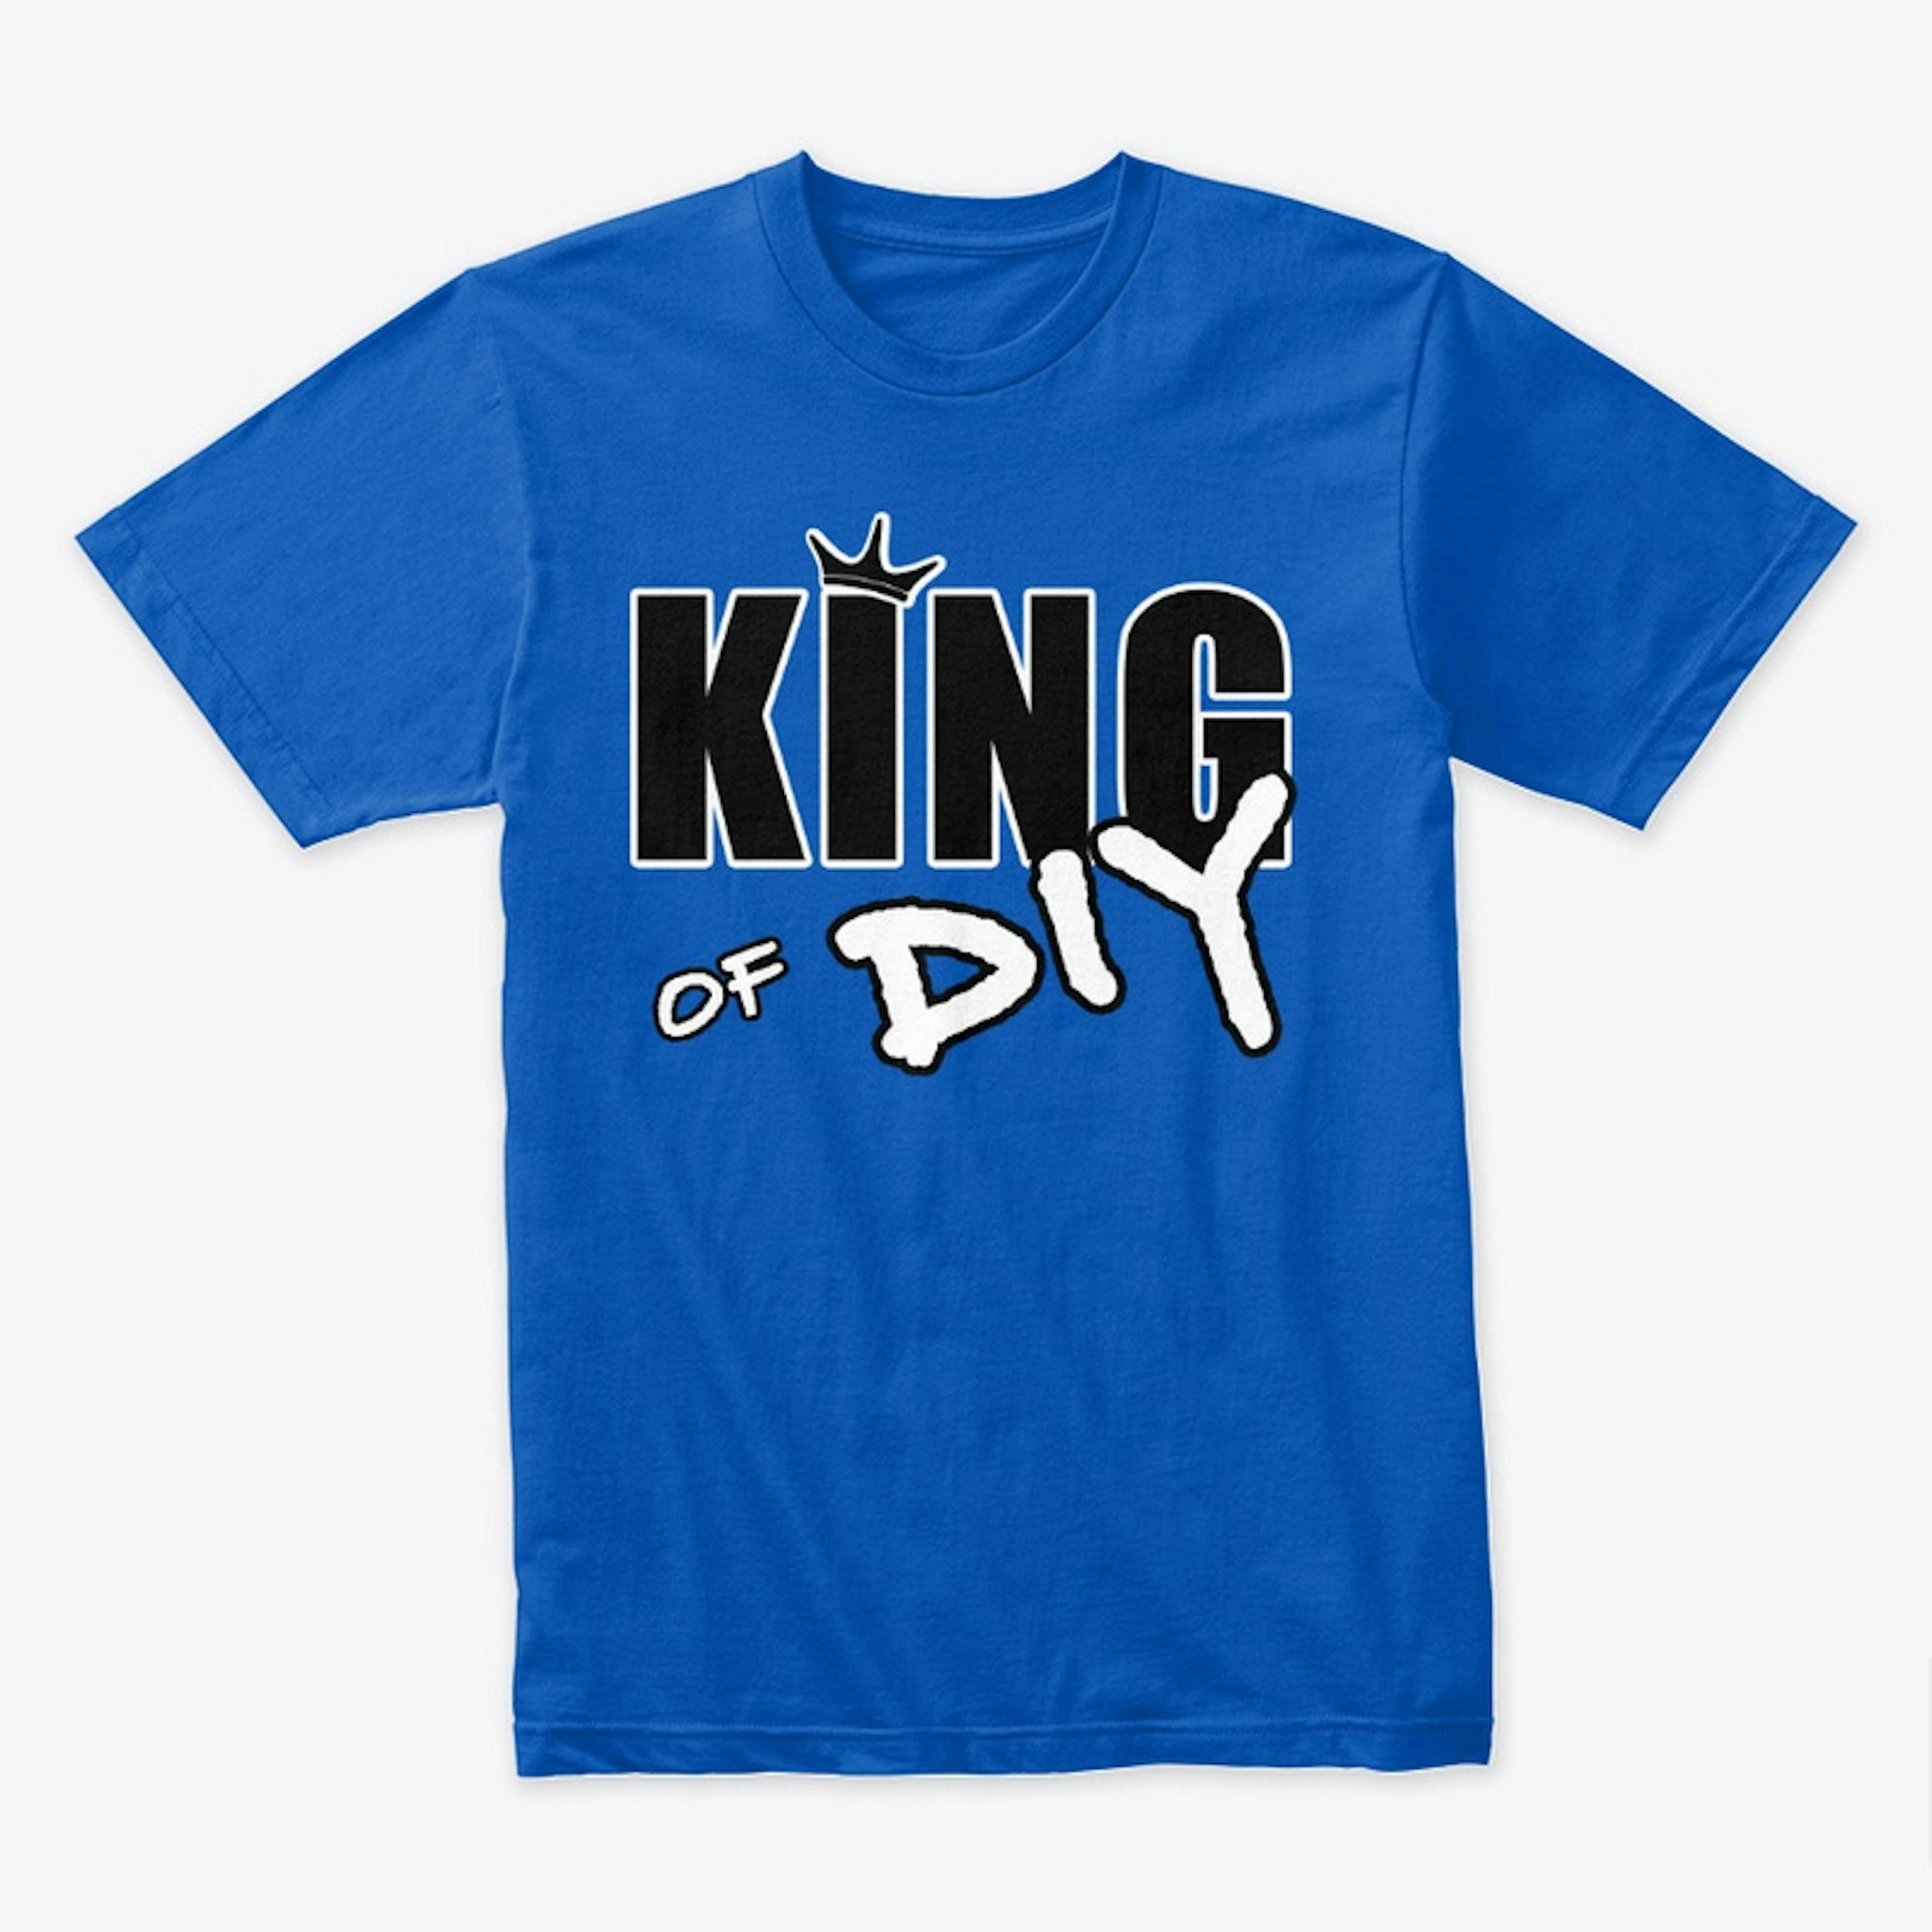 King of DIY shirt